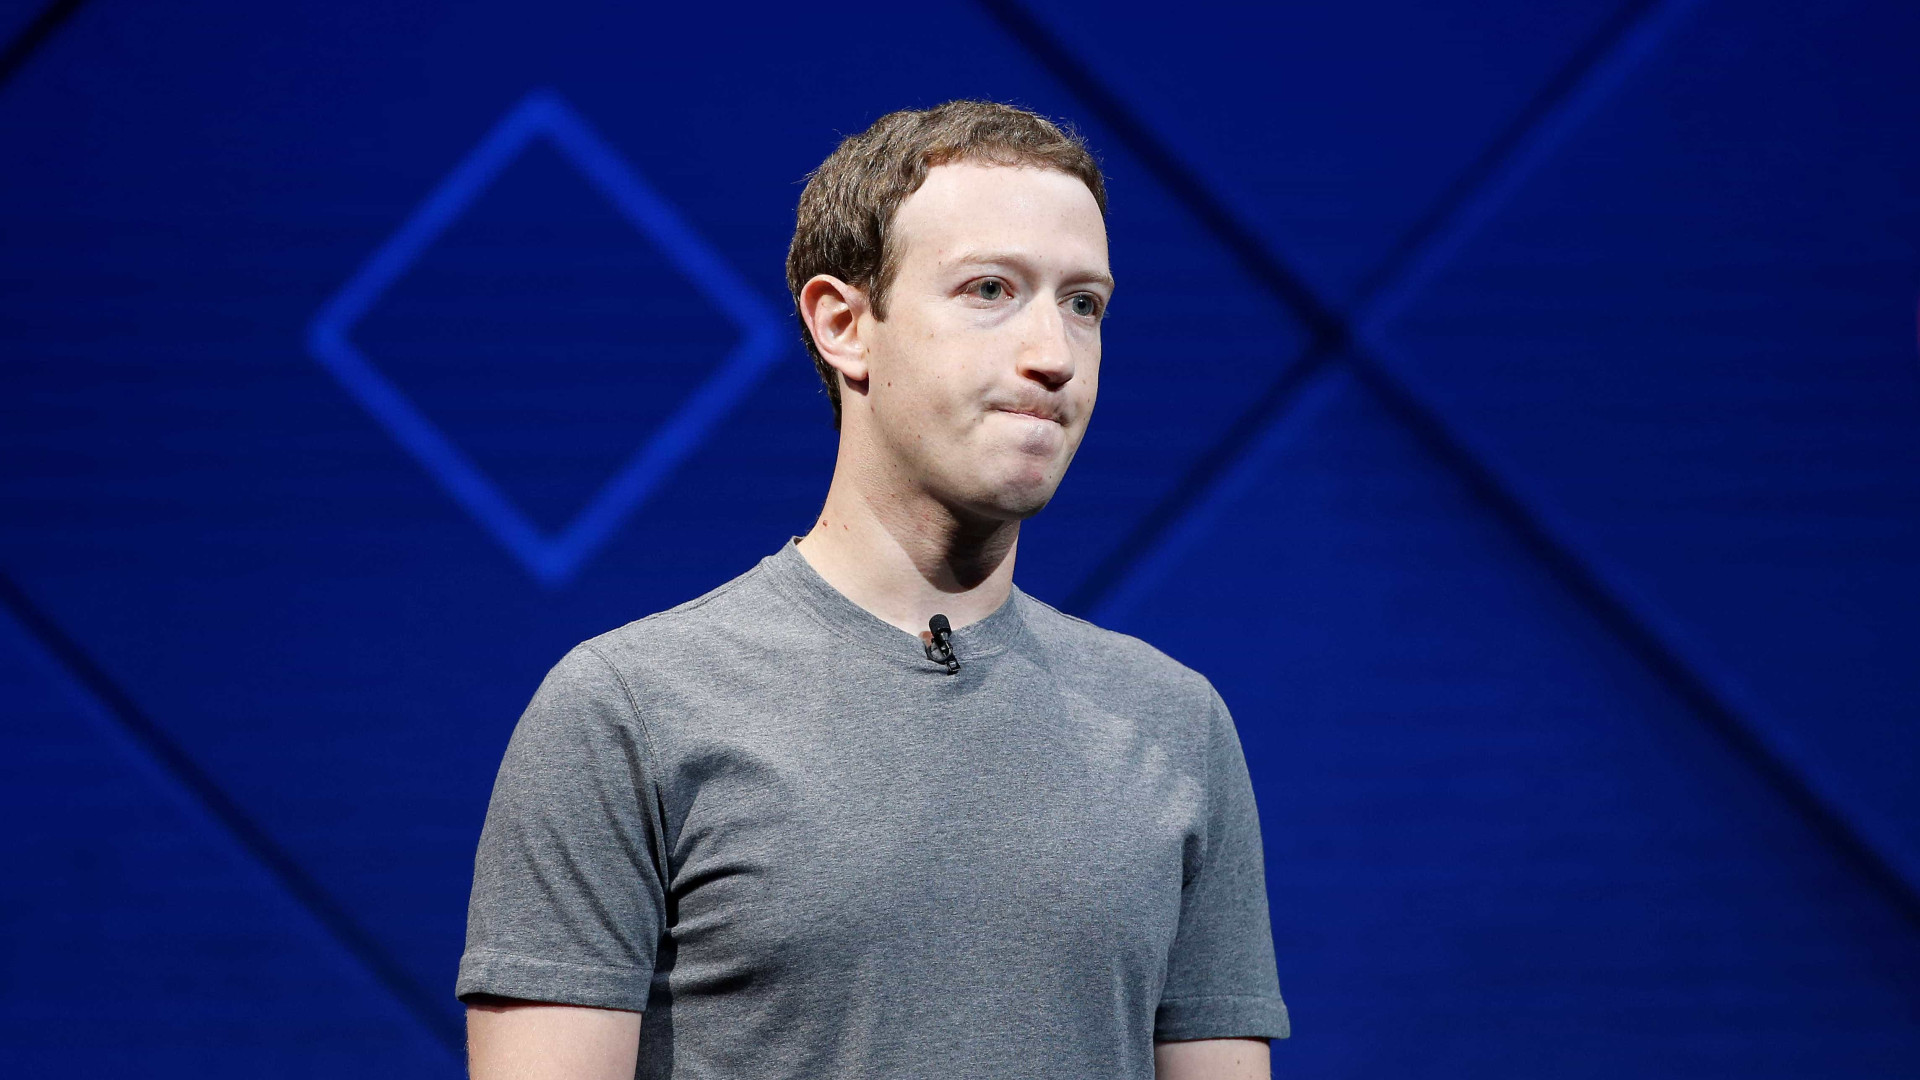 Zuckerberg finalmente se pronuncia sobre escândalo e admite erros